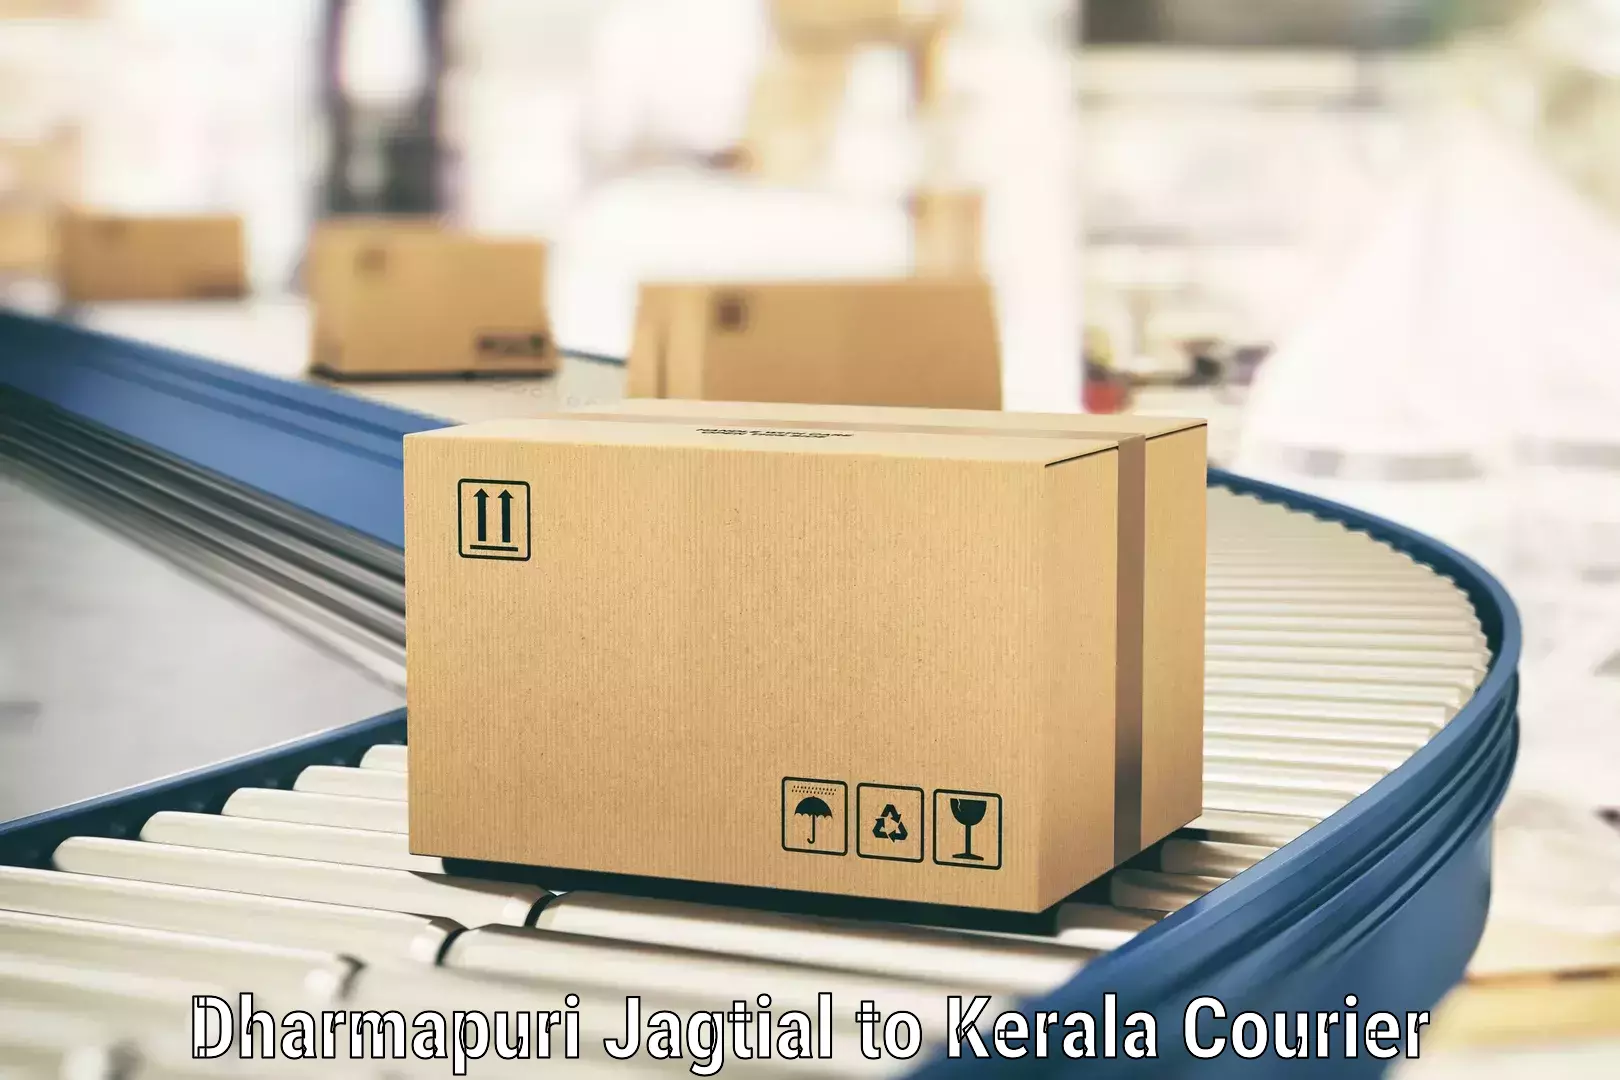 High value parcel delivery in Dharmapuri Jagtial to Kothanalloor